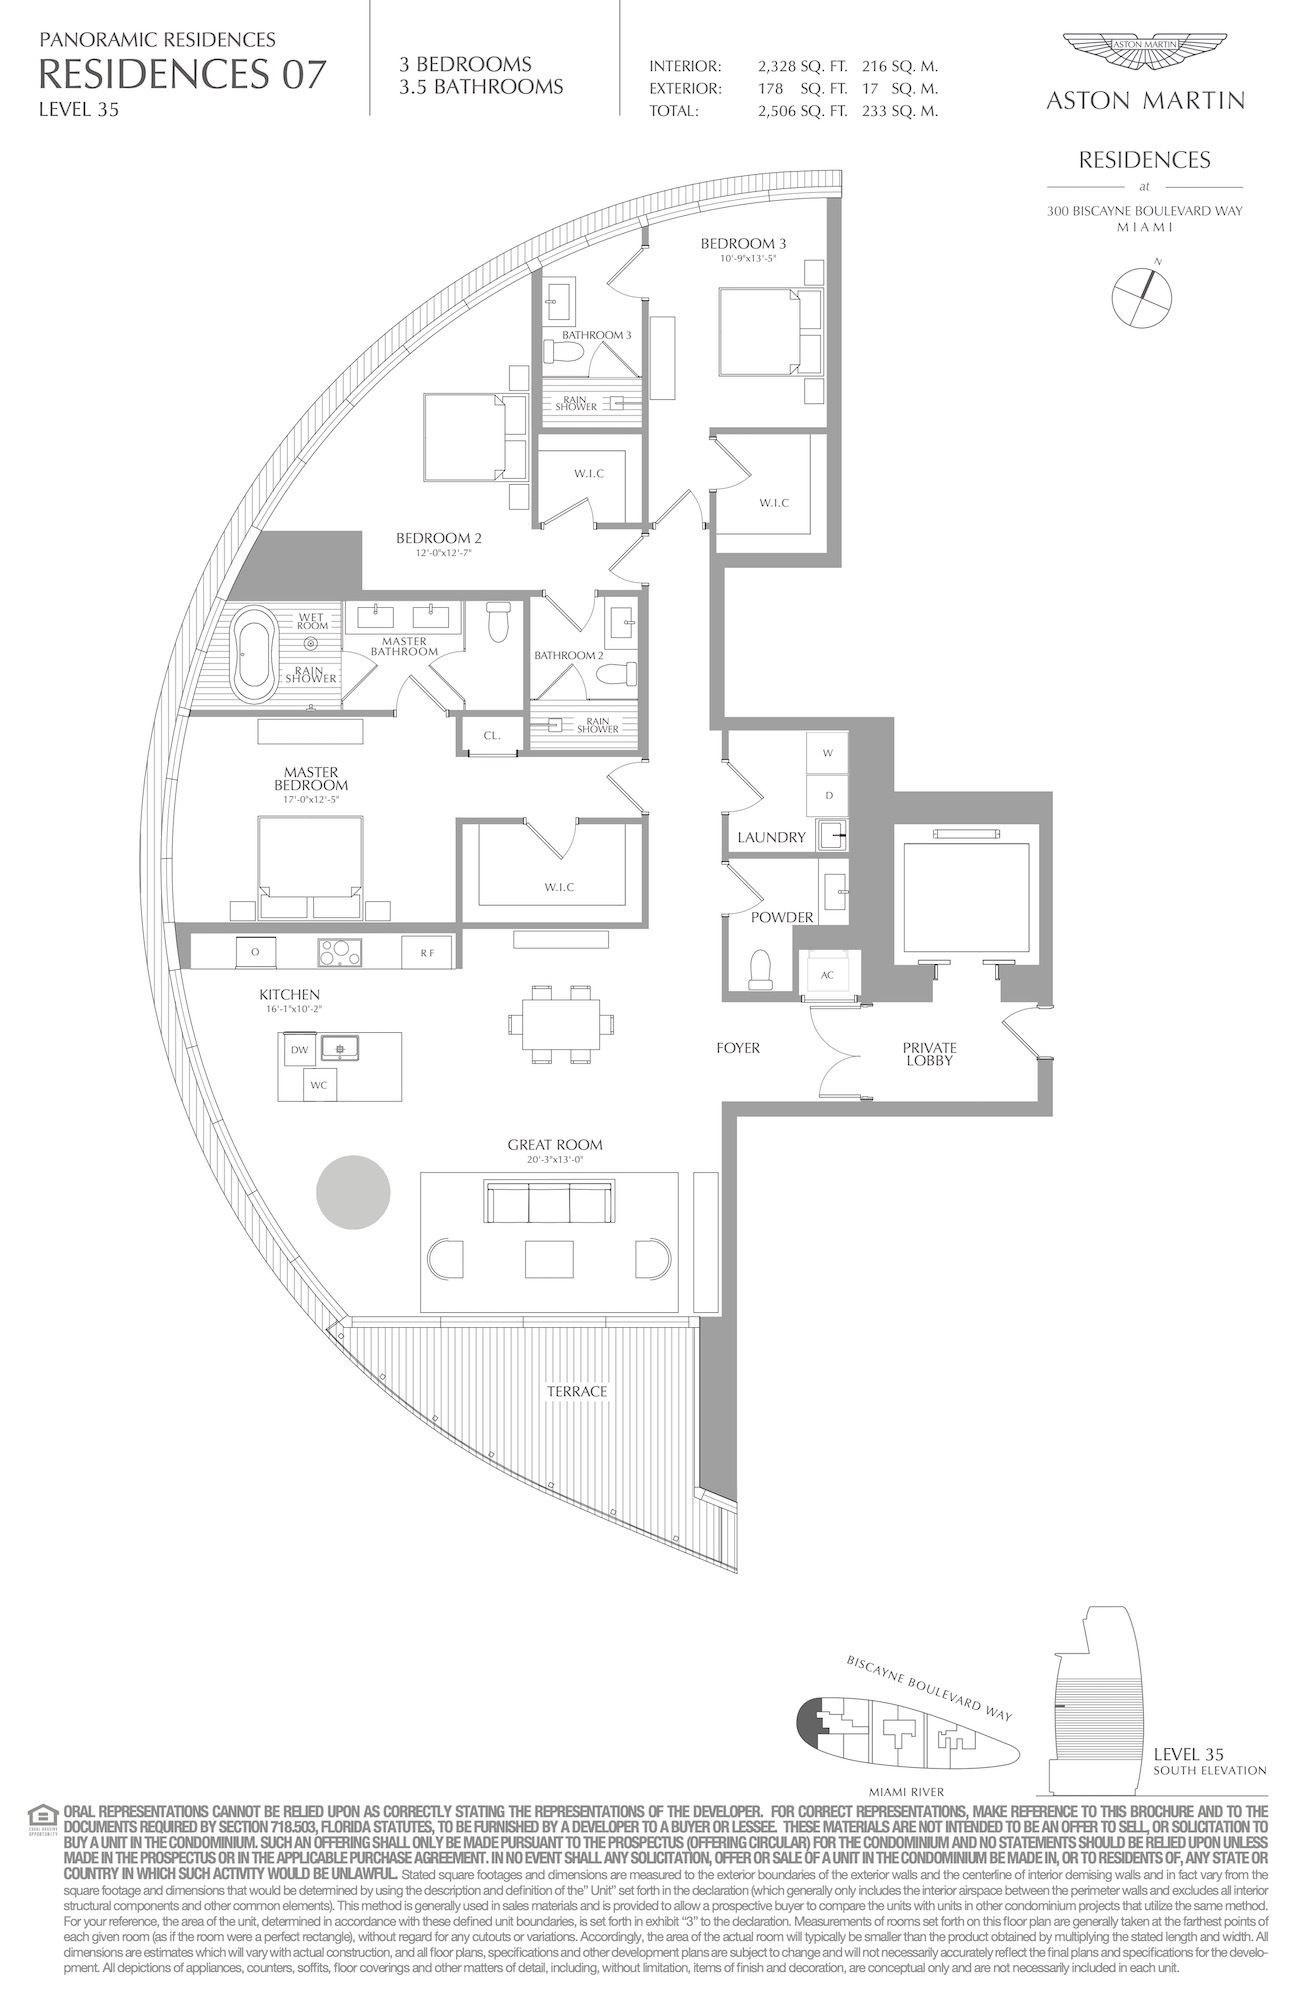 Floor Plan for Aston Martin Residences Floorplans, Residence 07